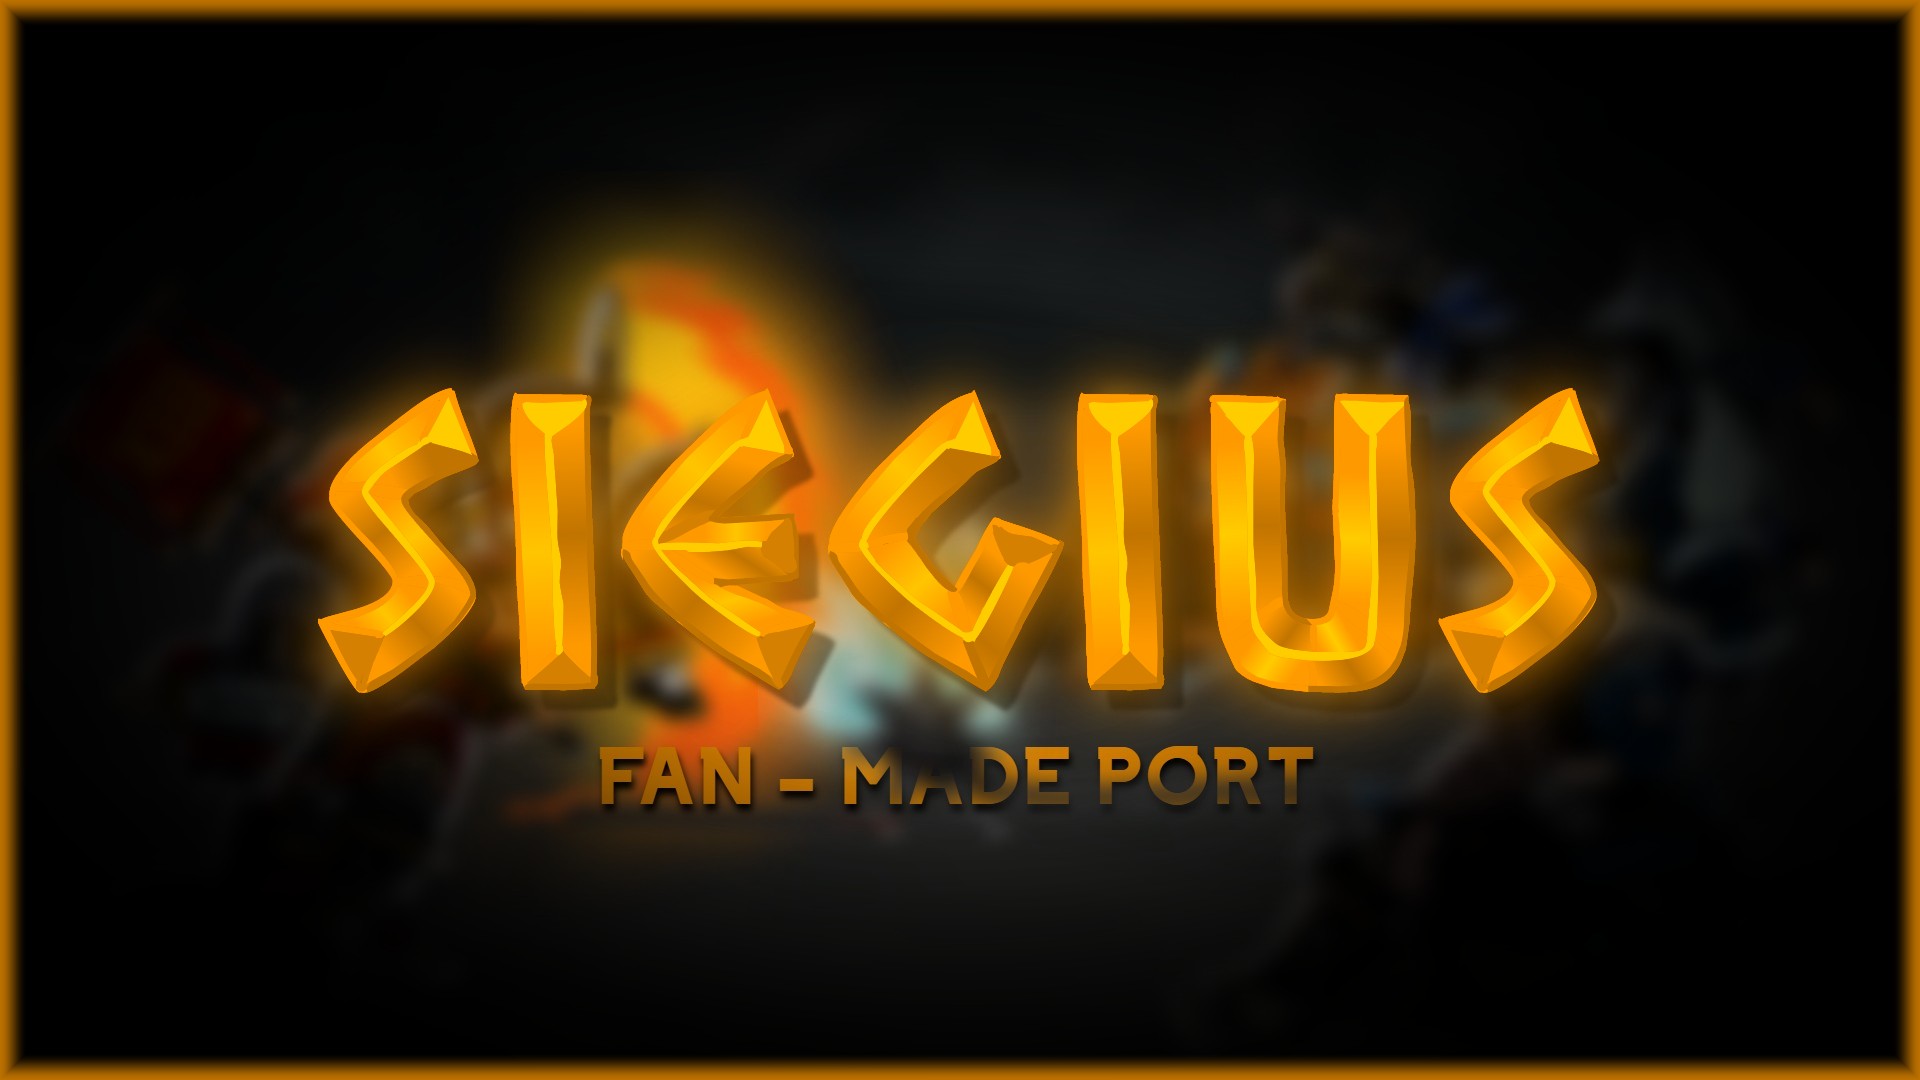 Siegius [Fanmade port]